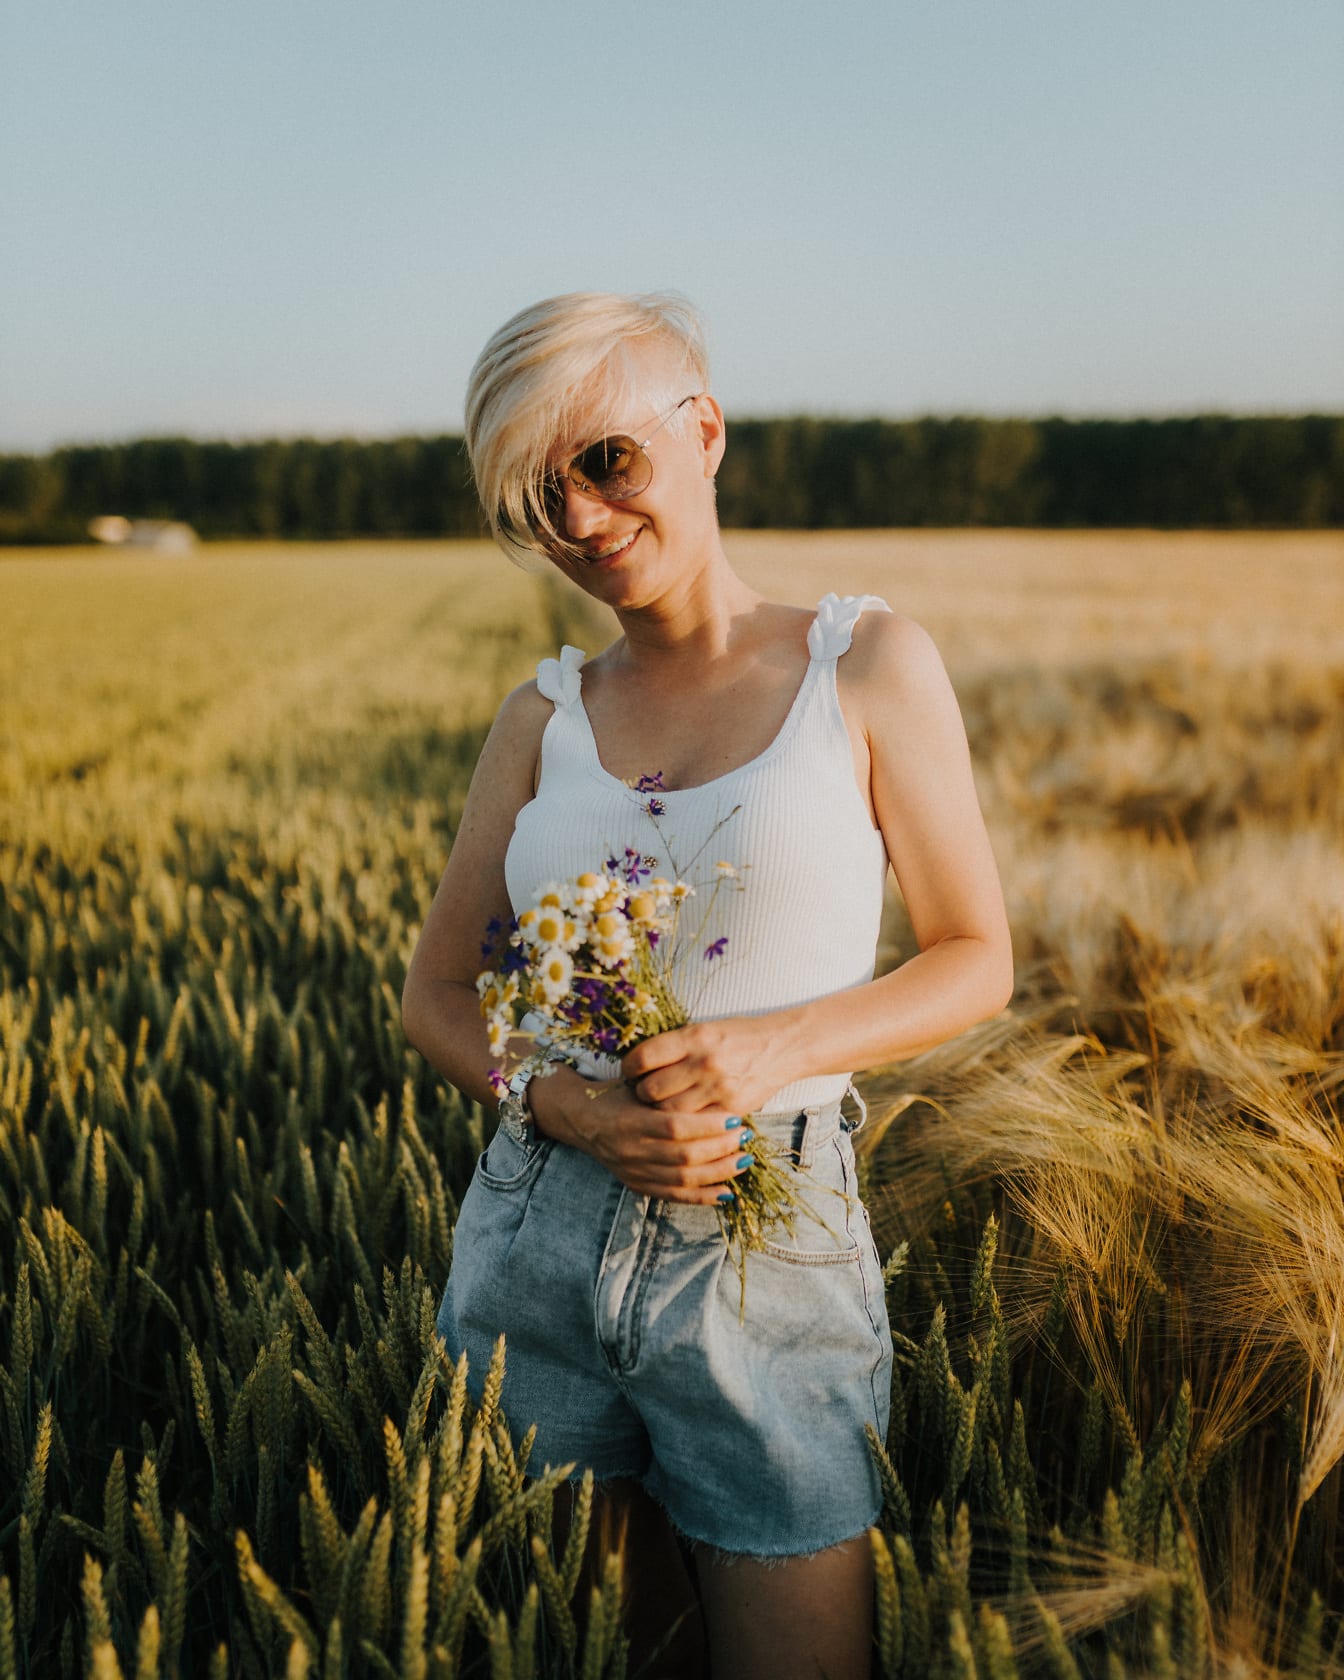 Atrakcyjna blondynka z bukietem rumianku na polu pszenicy